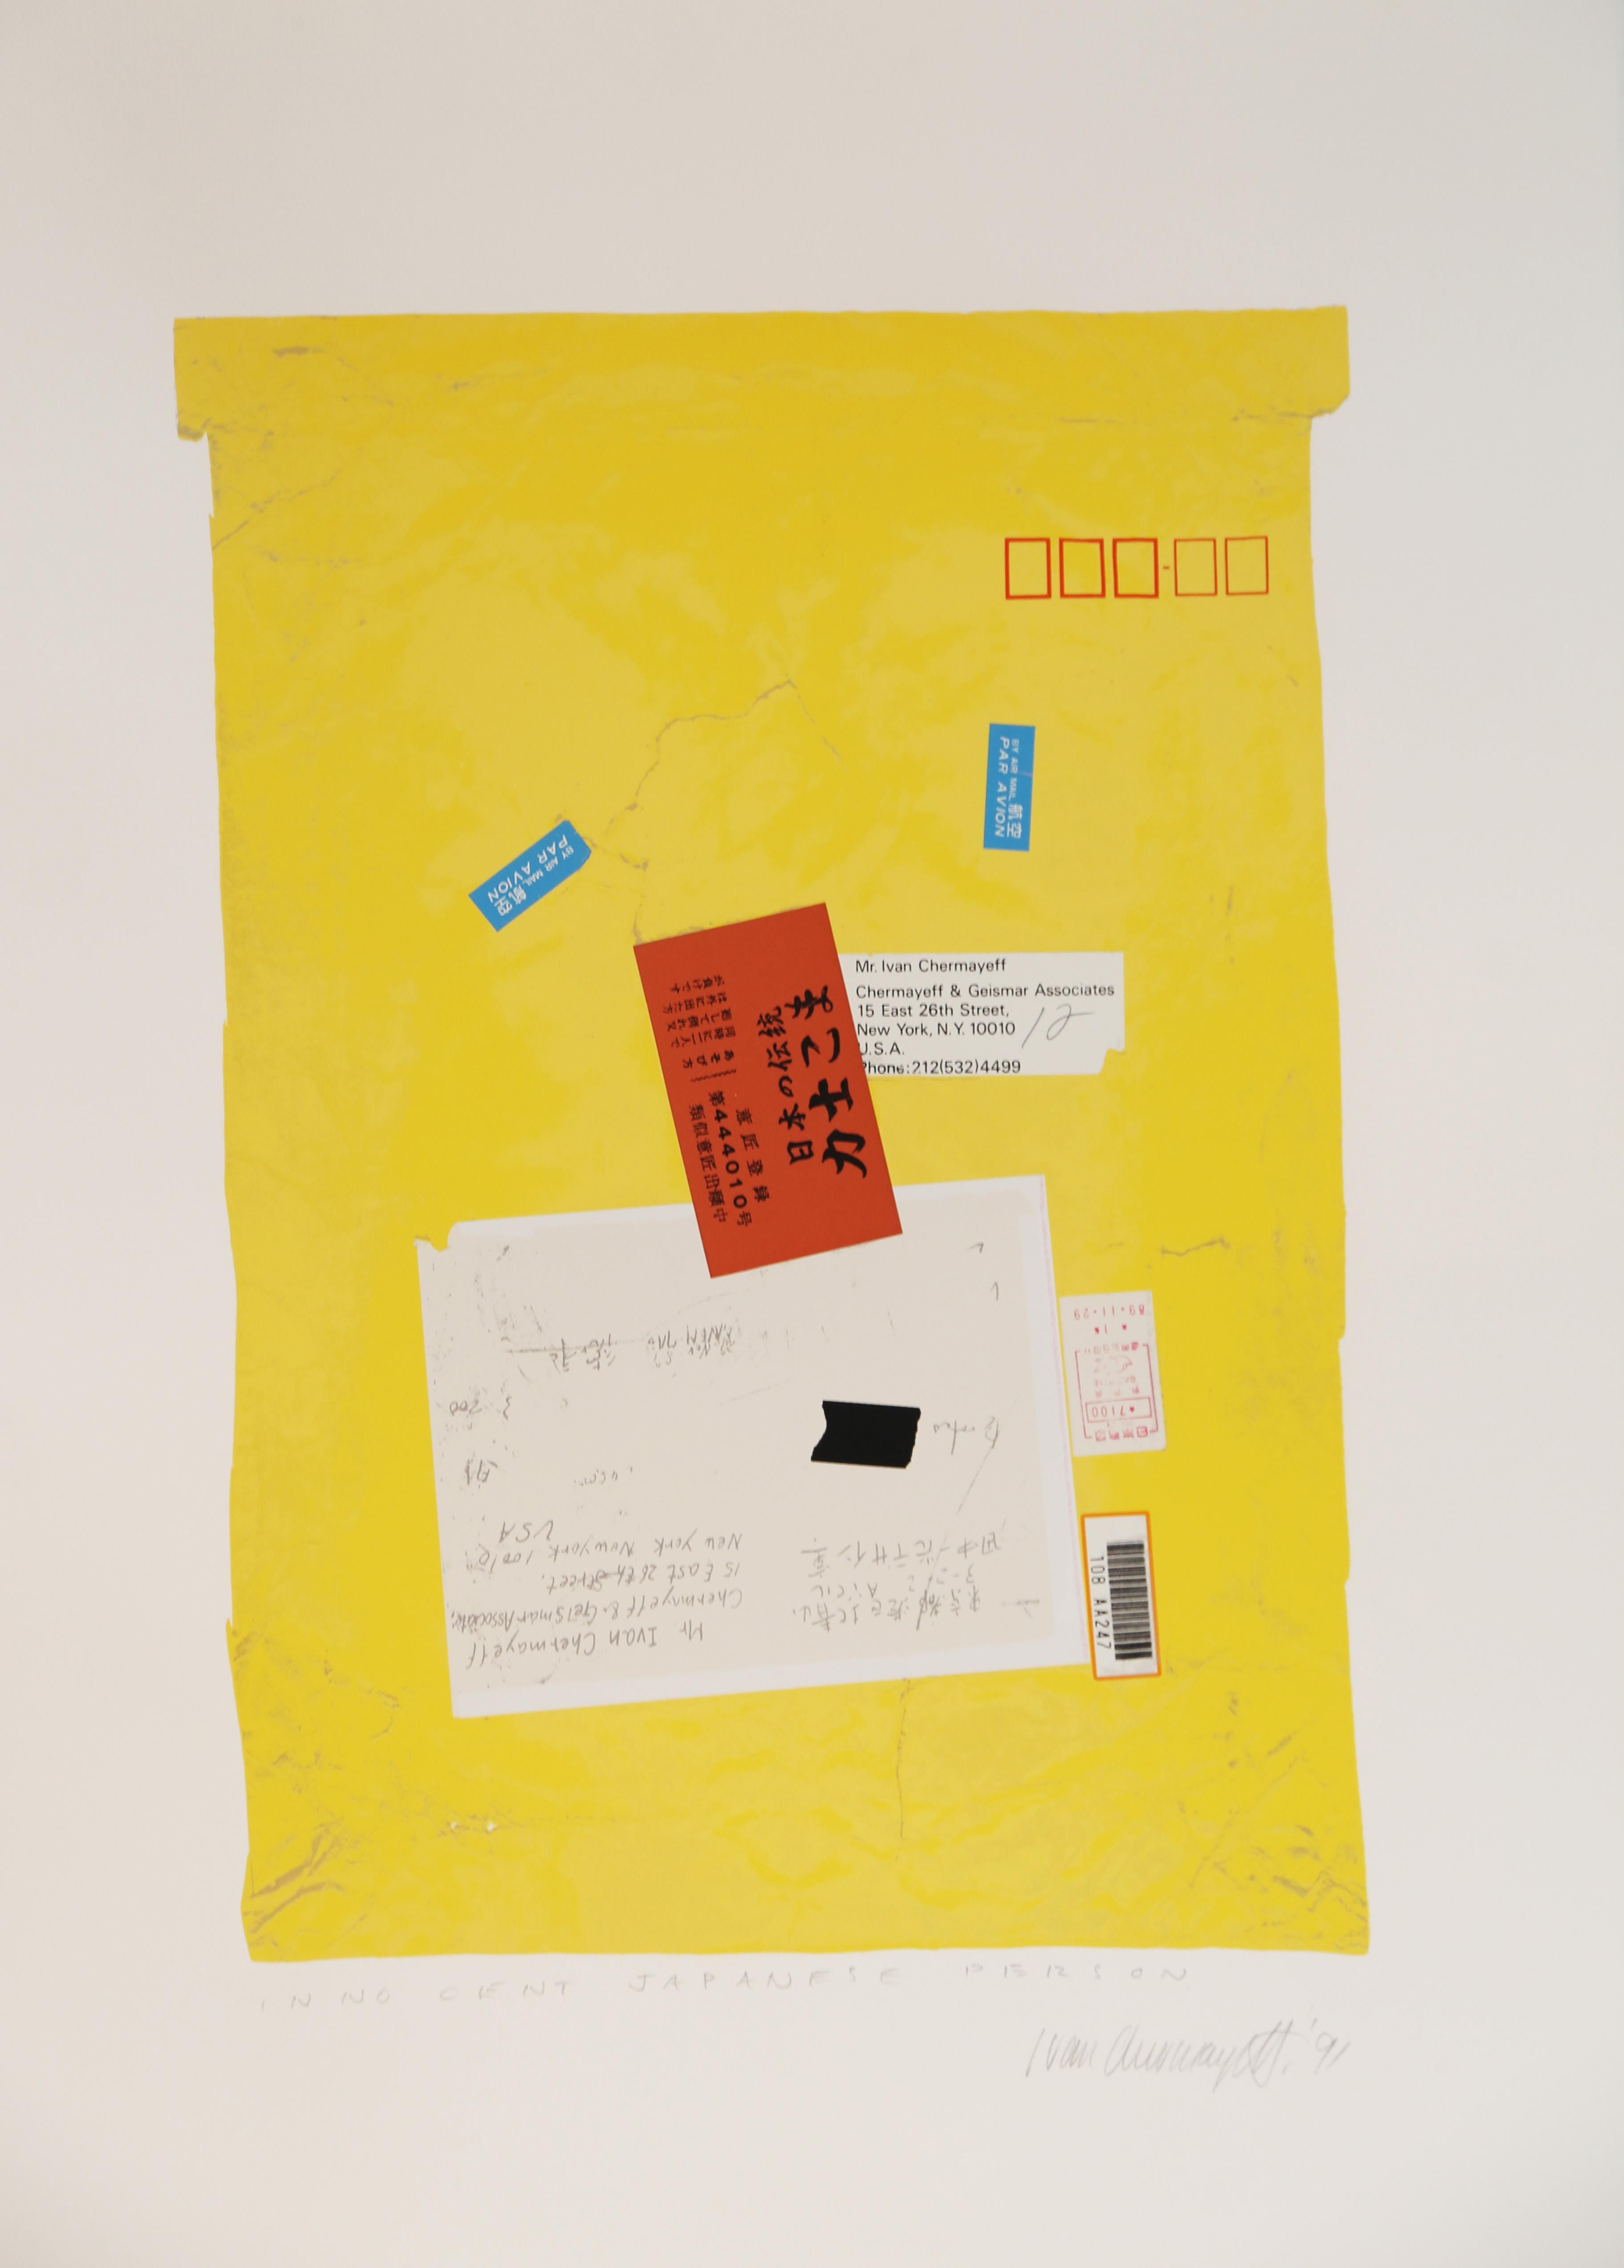 Abstrakter Raumteiler von Ivan Chermayeff, unschuldige japanische Person, abstrakter Siebdruck